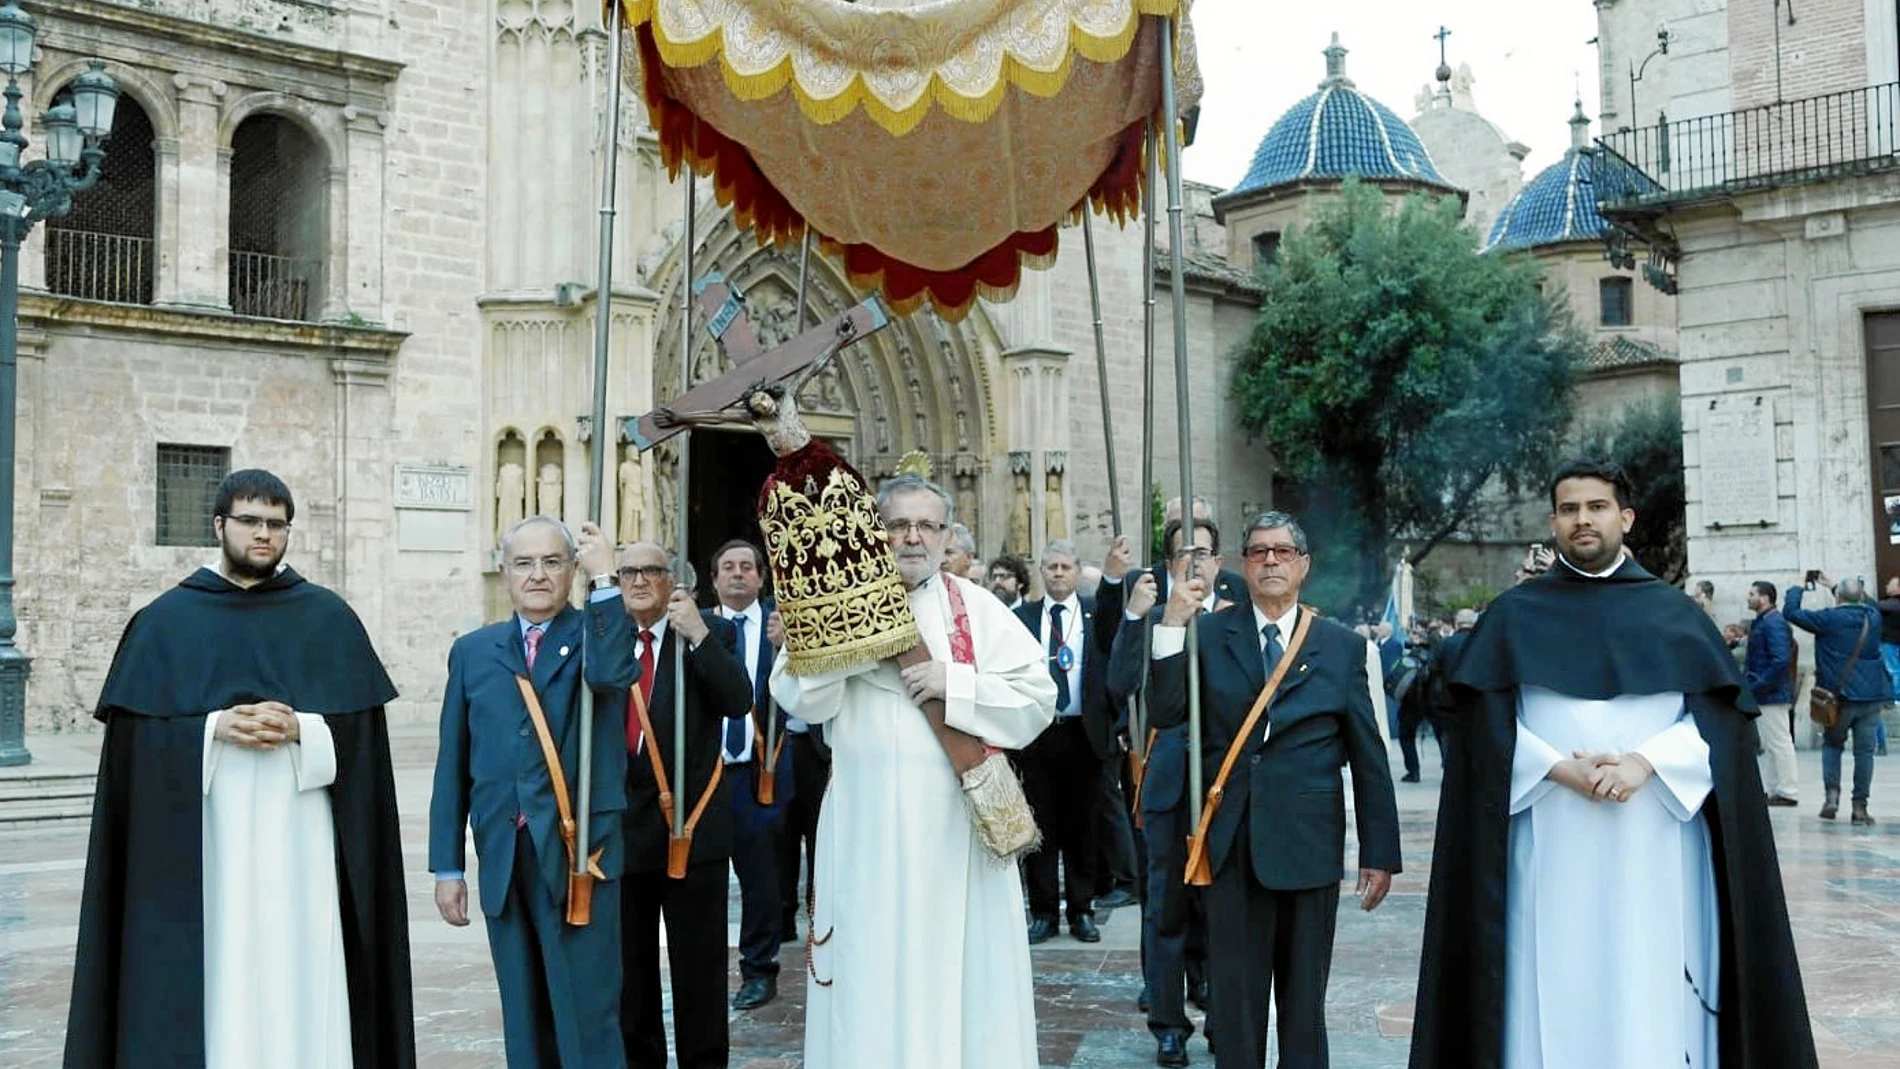 El pasado fin de semana se organizó una procesión multitudinaria, que se celebra cada cien años, y donde la imagen de la Virgen de los Desamparados fue precedida por el crucifijo que regaló San Vicente a la localidad de Graus (Huesca)